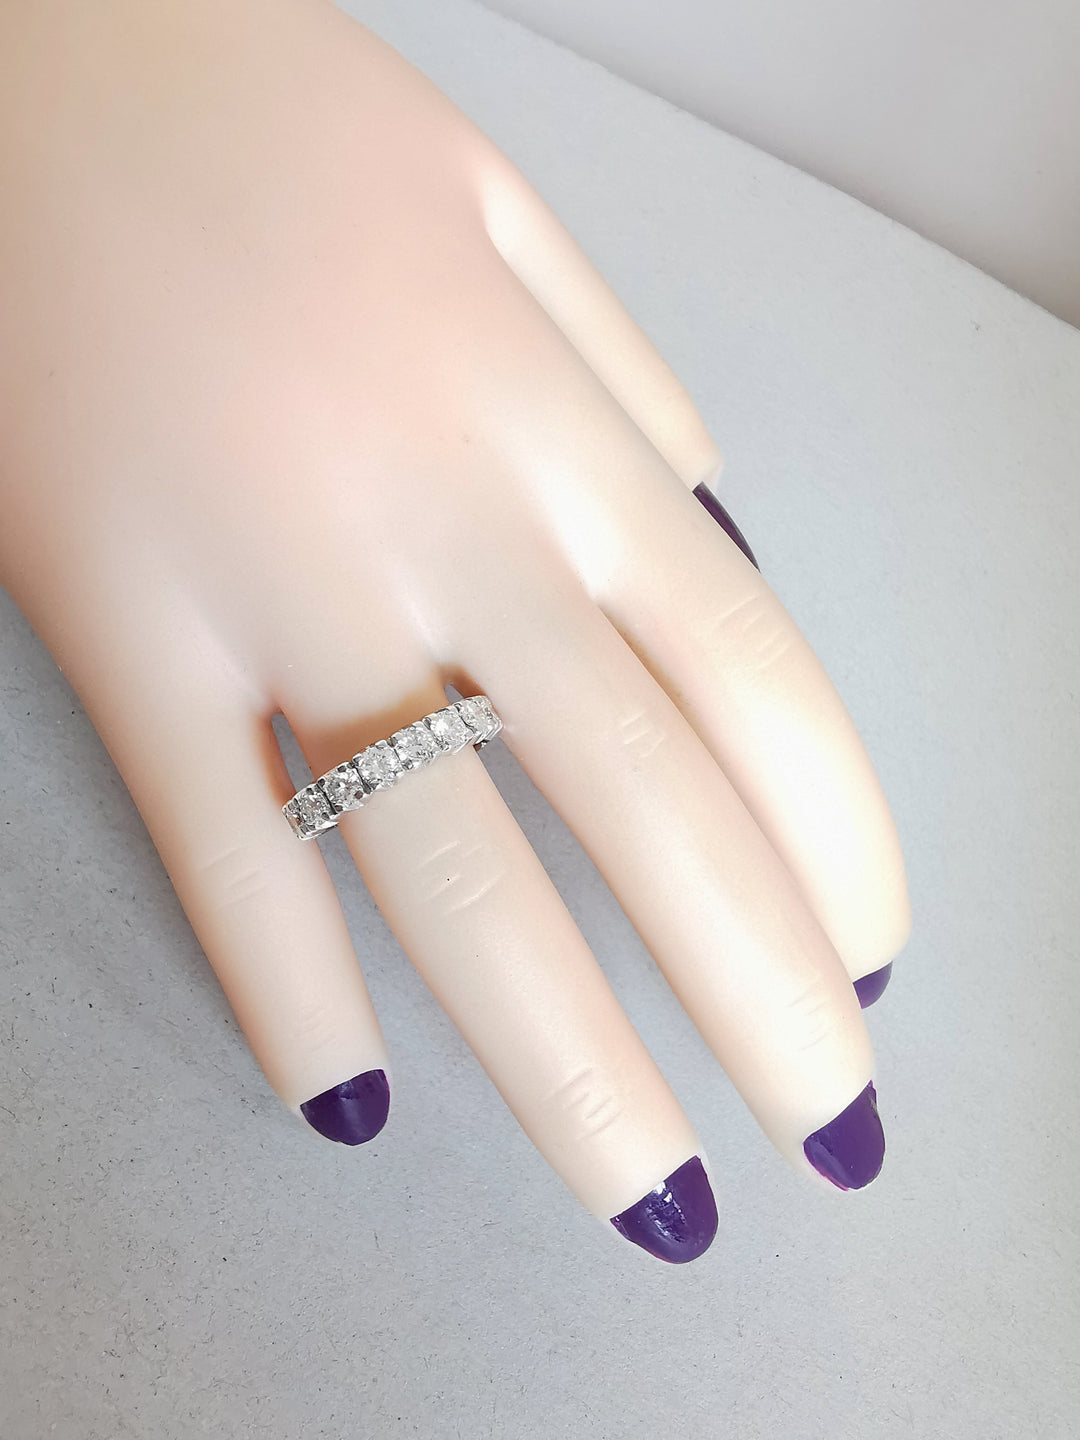 Bague anneau Demi alliance / Diamants 1,10 ct / Or Blanc 18K / 750 / 18 carats